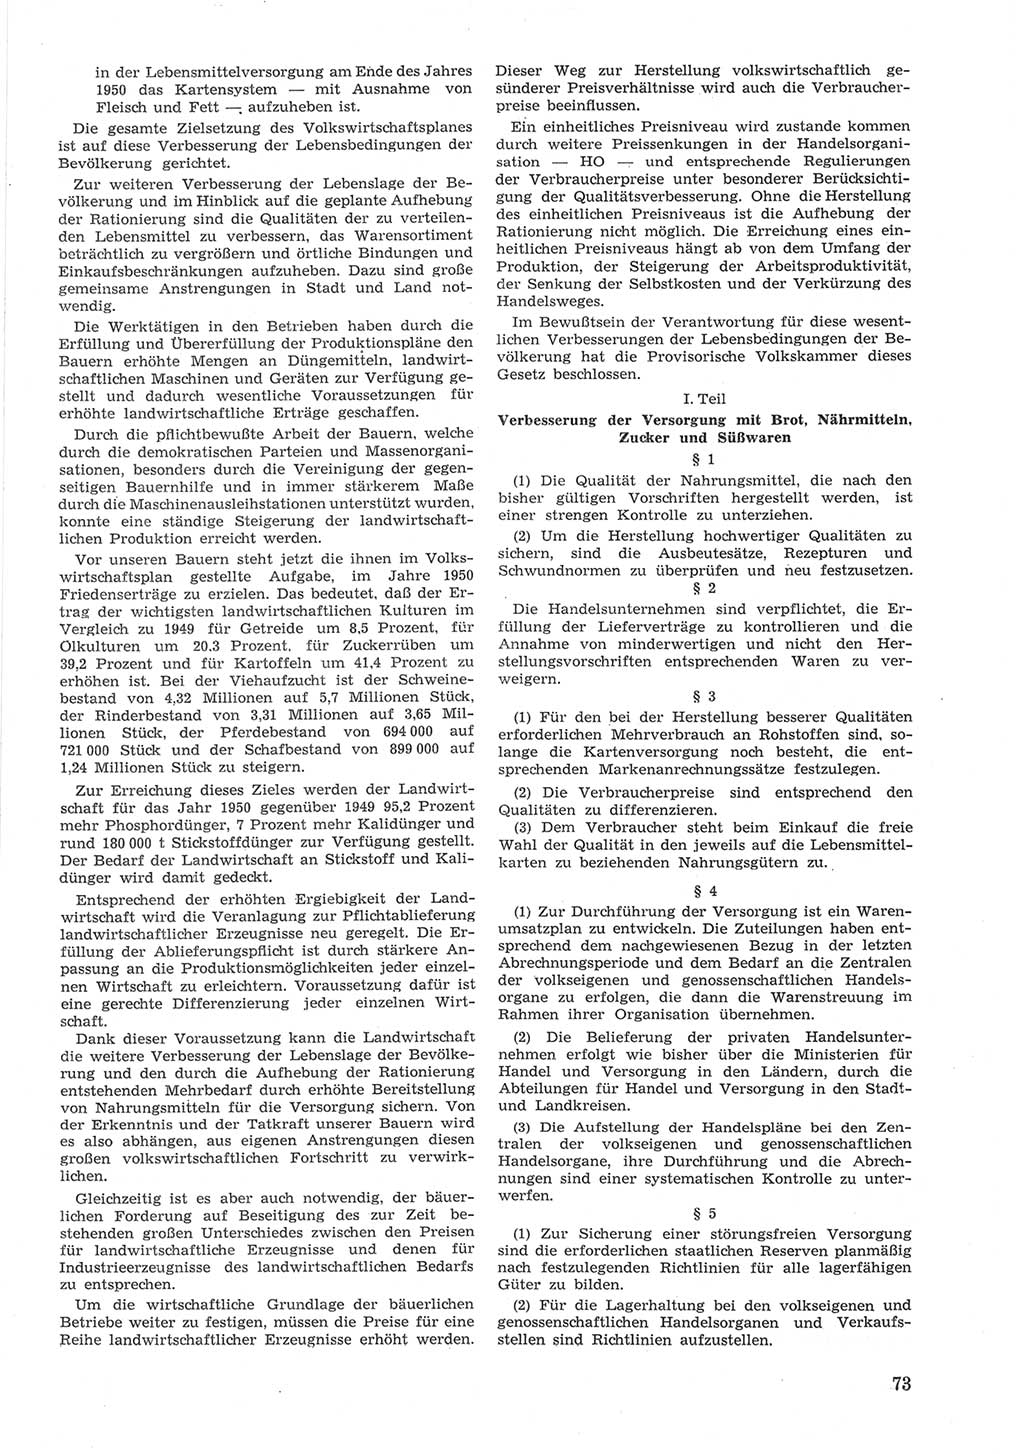 Provisorische Volkskammer (VK) der Deutschen Demokratischen Republik (DDR) 1949-1950, Dokument 673 (Prov. VK DDR 1949-1950, Dok. 673)